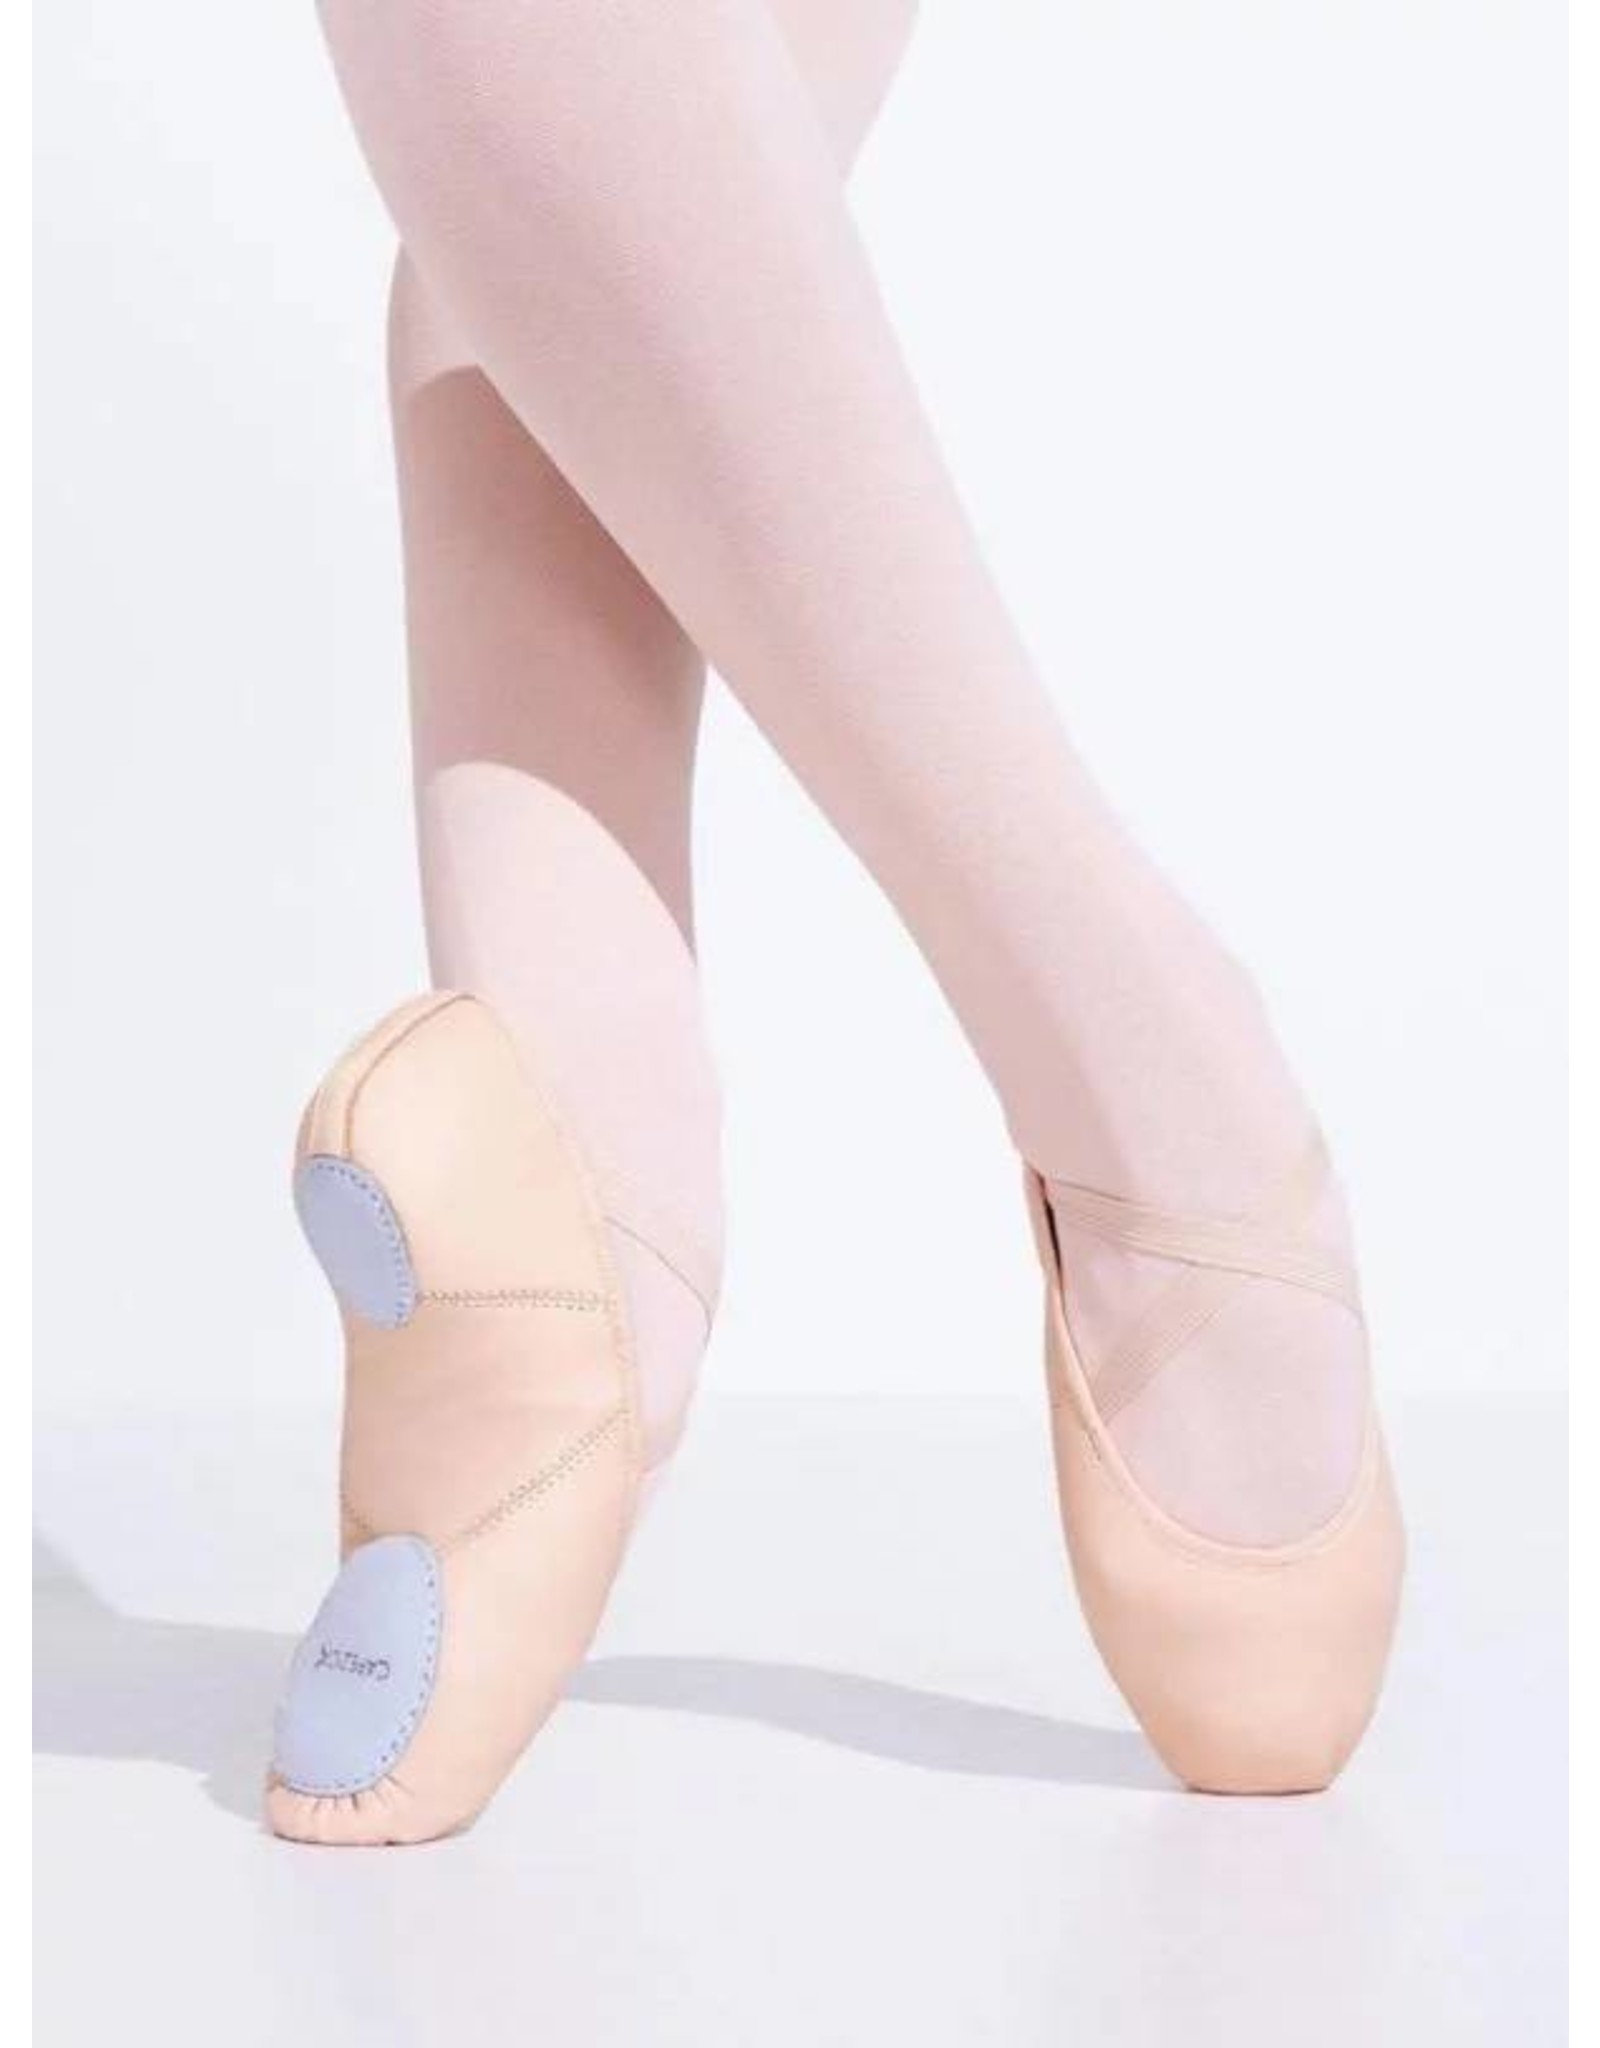 https://cdn.shoplightspeed.com/shops/621157/files/10470086/1600x2048x2/capezio-2027-juliet-leather-split-sole-ballet-shoe.jpg